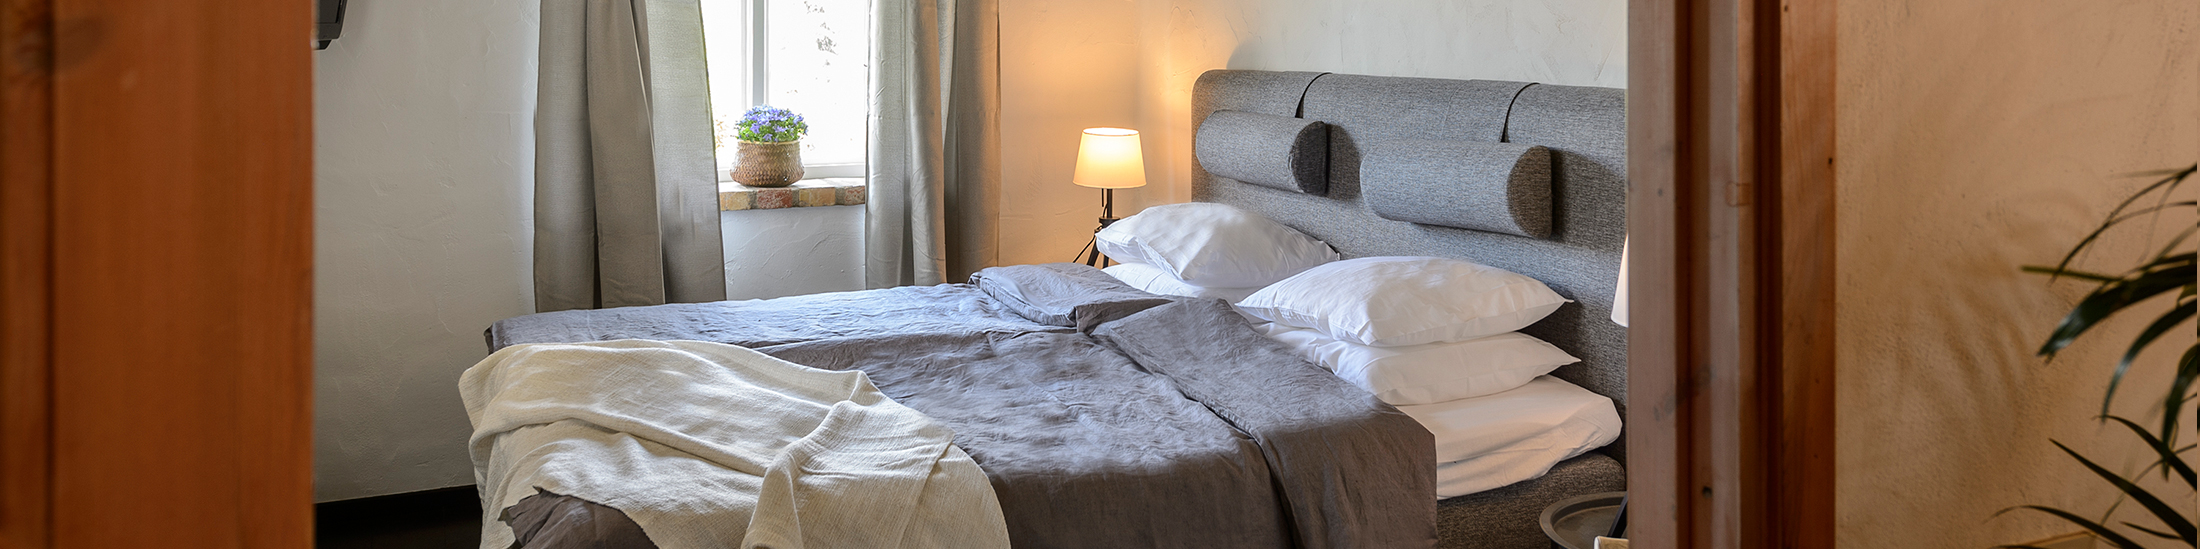 Våra rum är bekvämt inredda med breda, sköna sängar som är bäddade med härligt mjuka lakan. Här sover du gott!